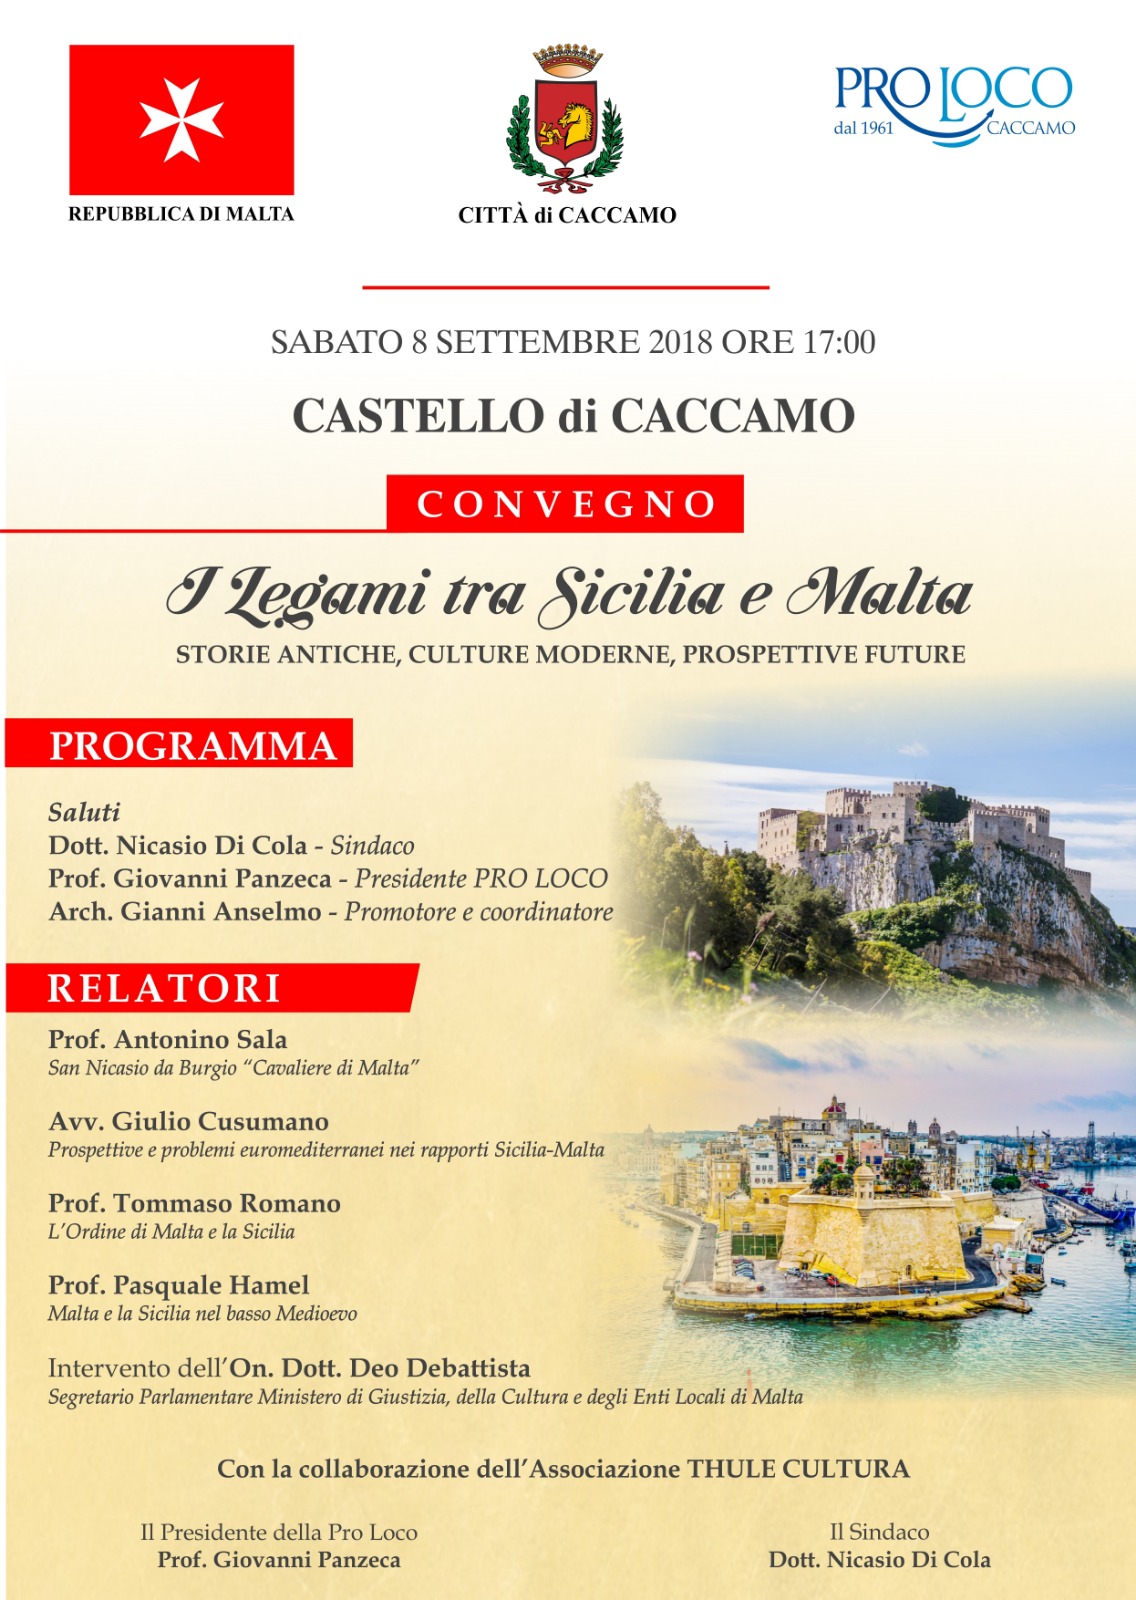 Convegno sul tema "I Legami tra Sicilia e Malta", Sabato 8 Settembre 2018 al Castello di Caccamo